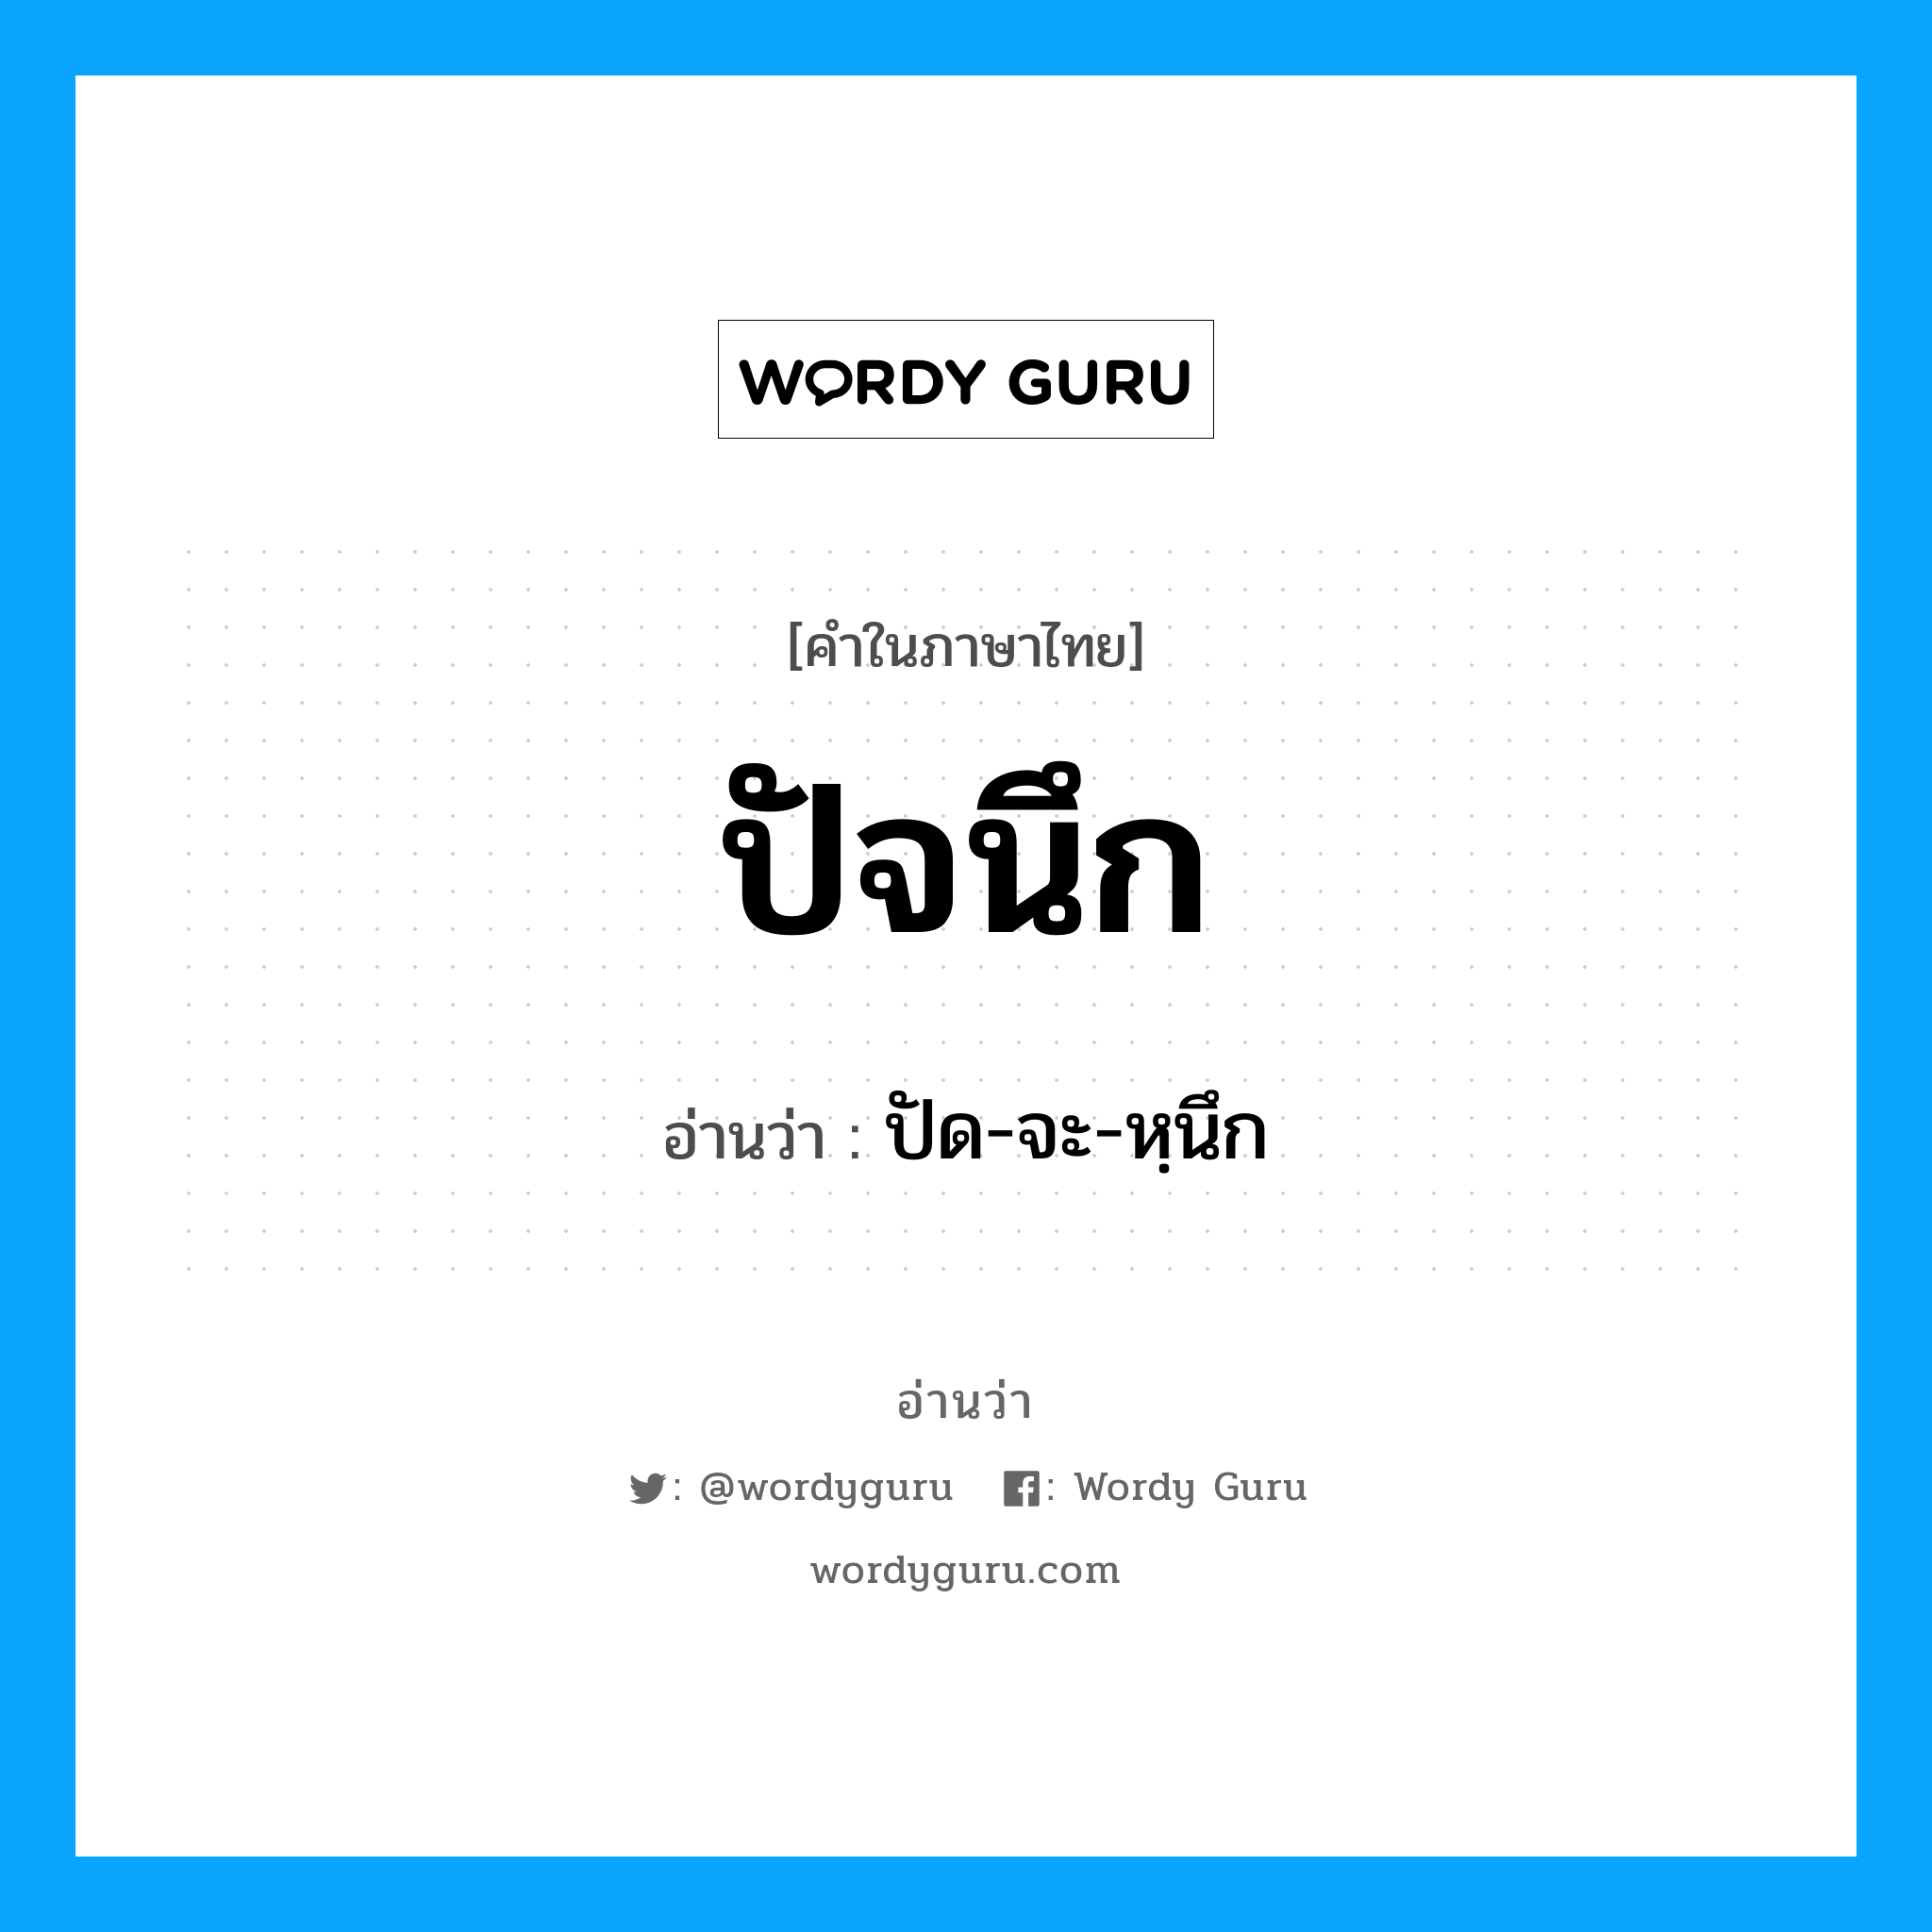 ปัด-จะ-หฺนึก เป็นคำอ่านของคำไหน?, คำในภาษาไทย ปัด-จะ-หฺนึก อ่านว่า ปัจนึก